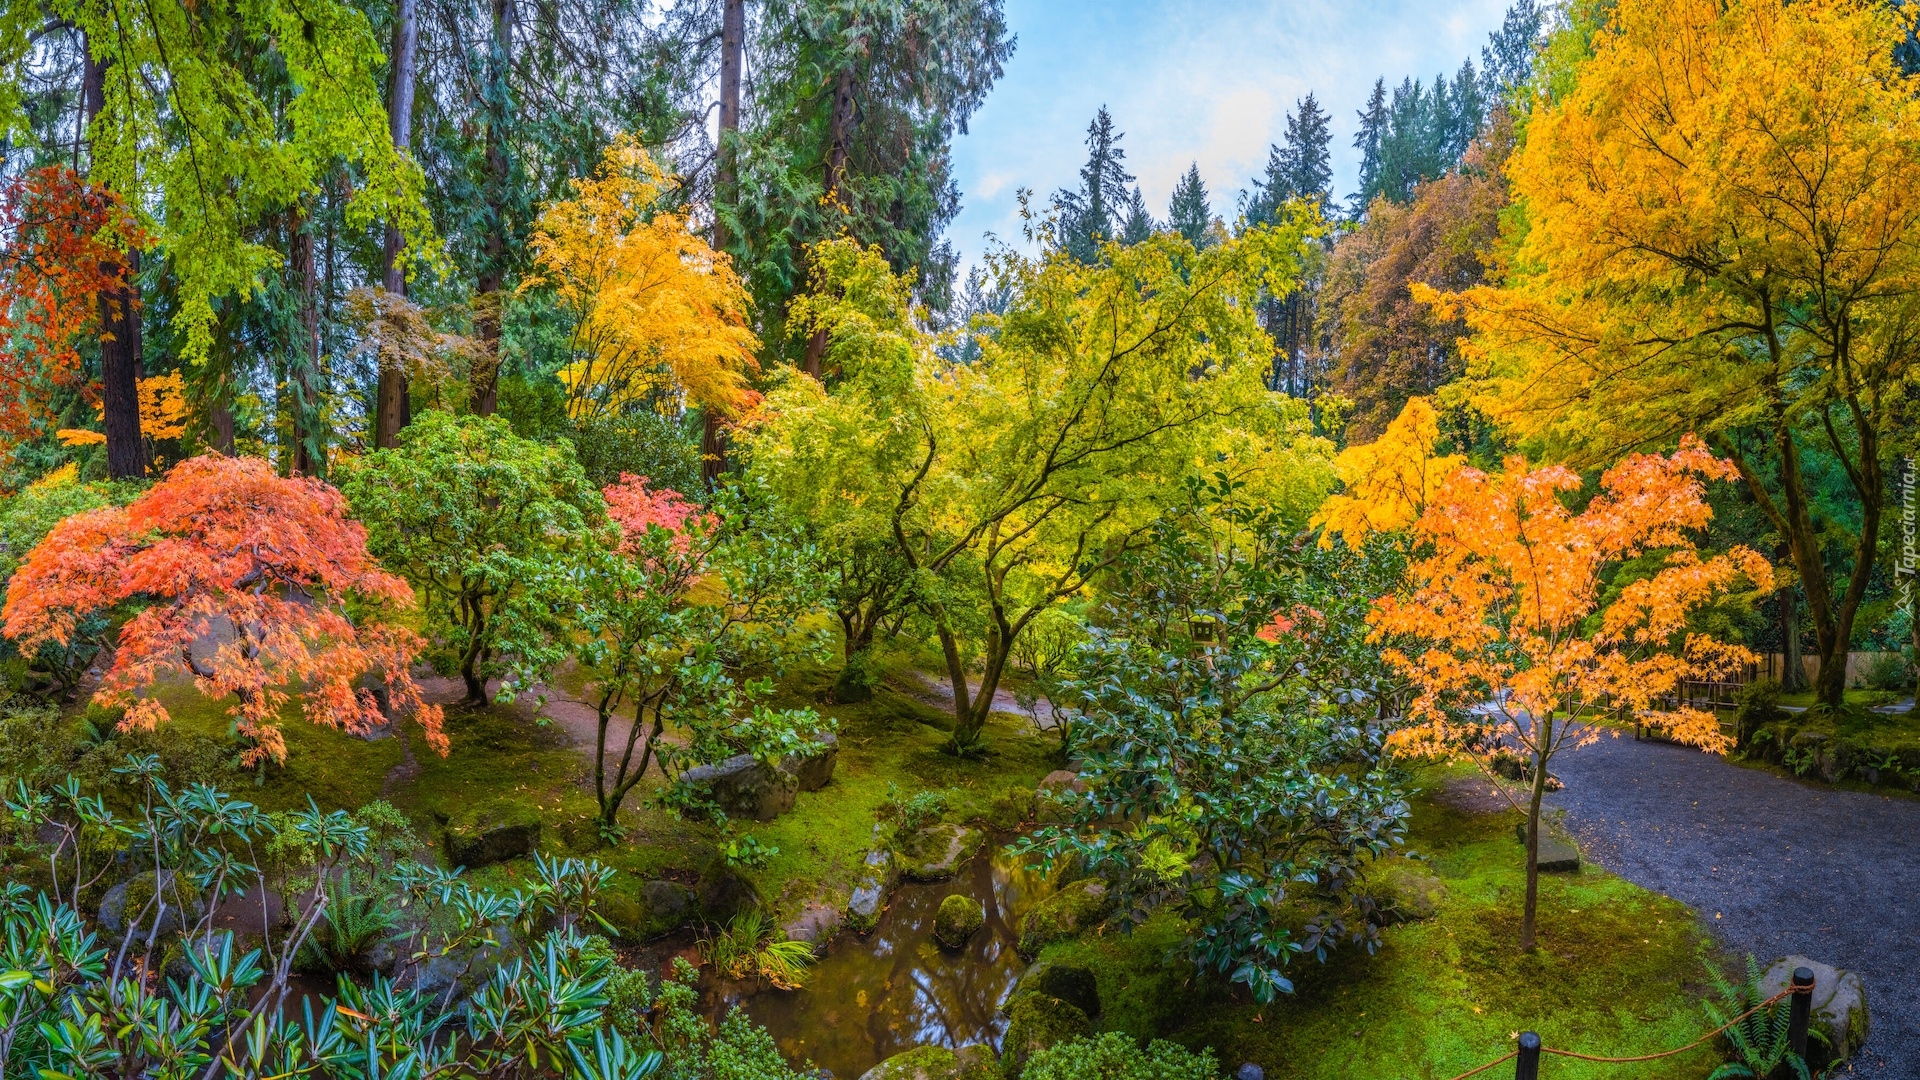 Ogród japoński, Drzewa, Kolorowe, Klon, Jesień